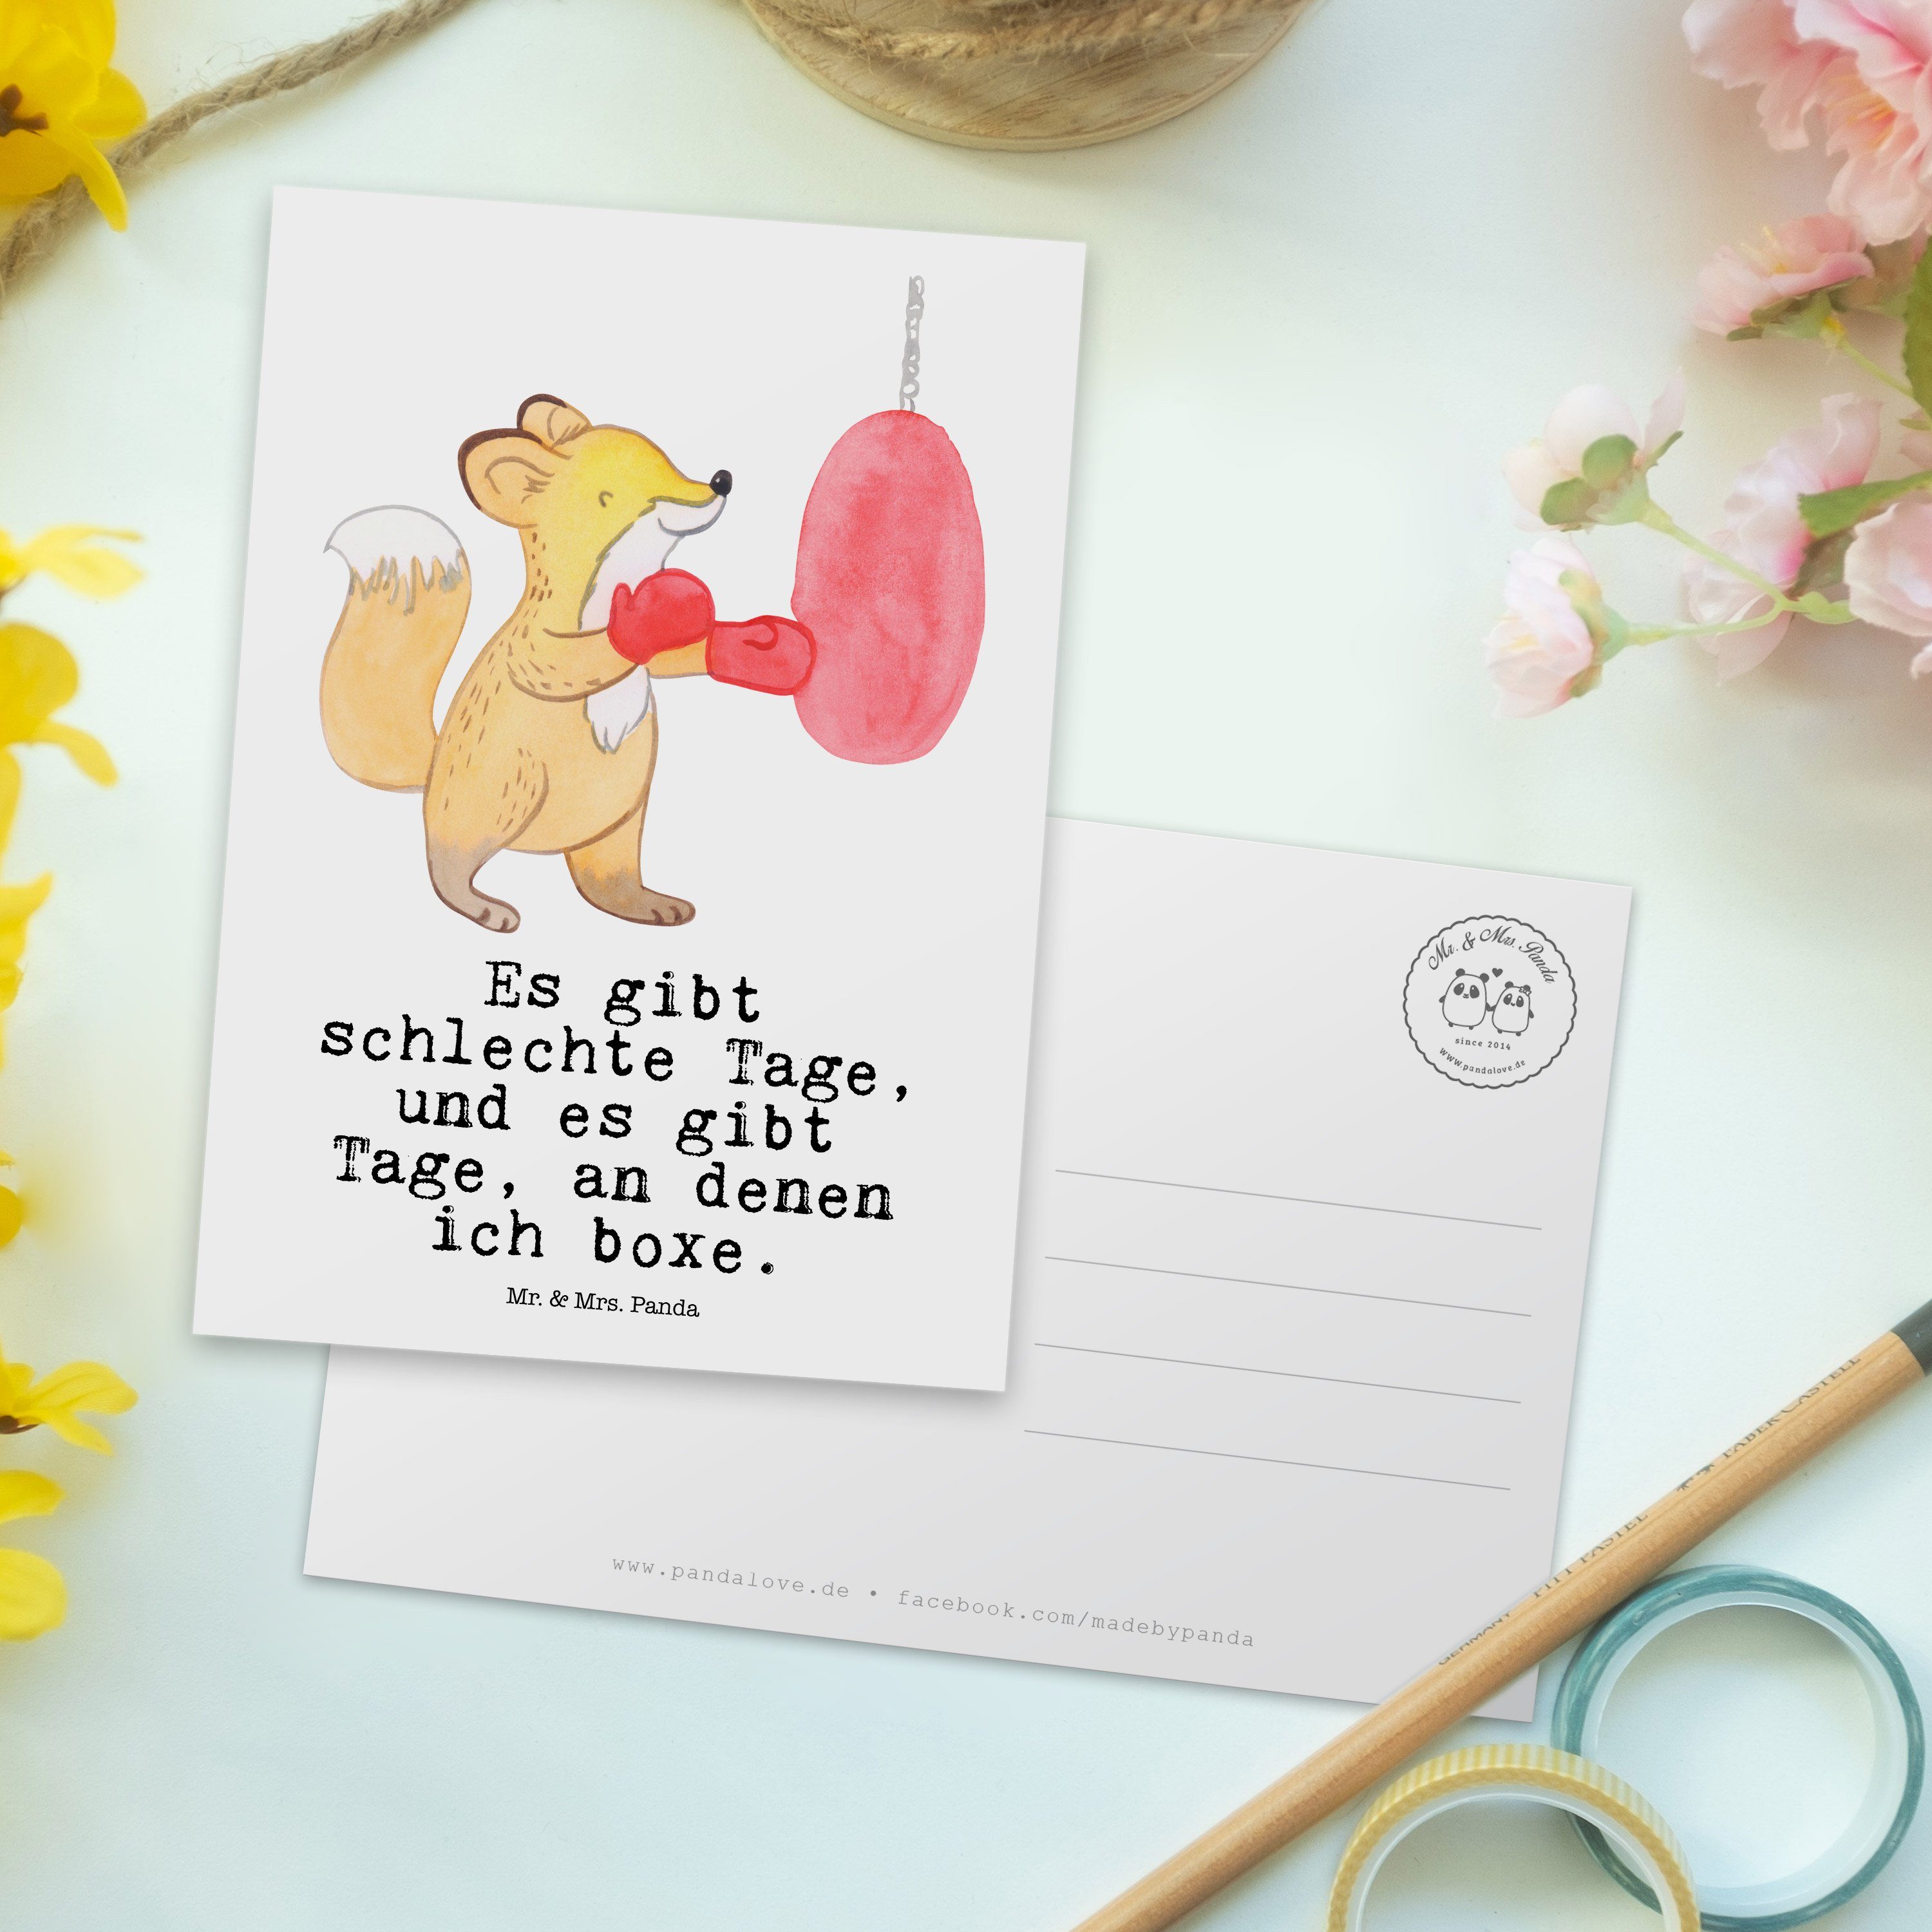 Mr. & Mrs. Geschenk, Geschenkkarte - Tage - Einladung, Boxen Weiß Fuchs Panda Postkarte Karte